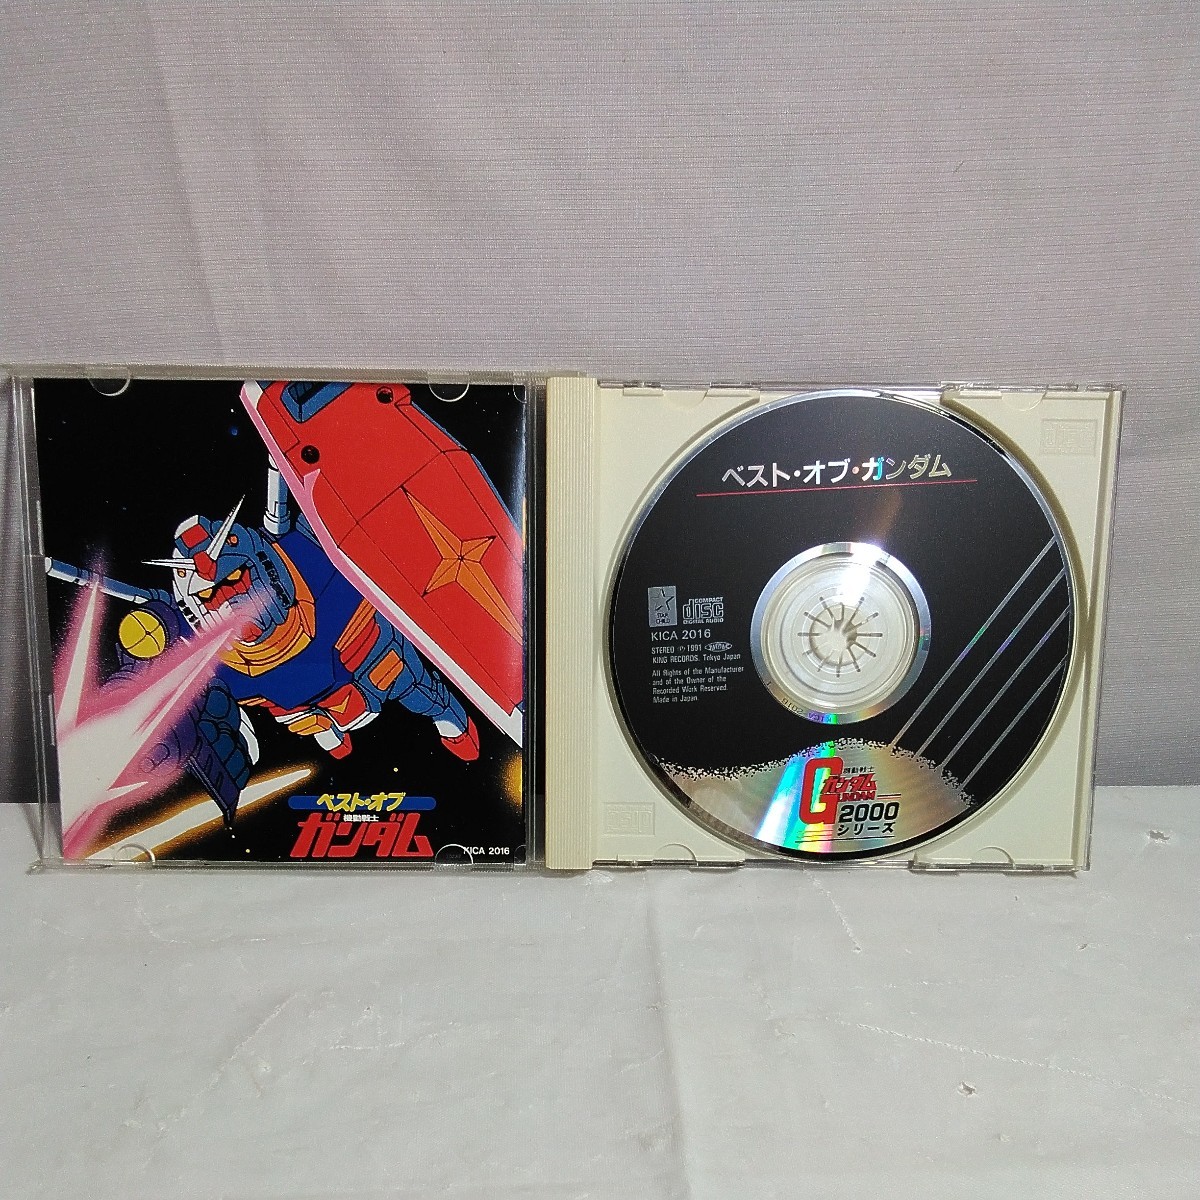  лучший *ob* Gundam CD